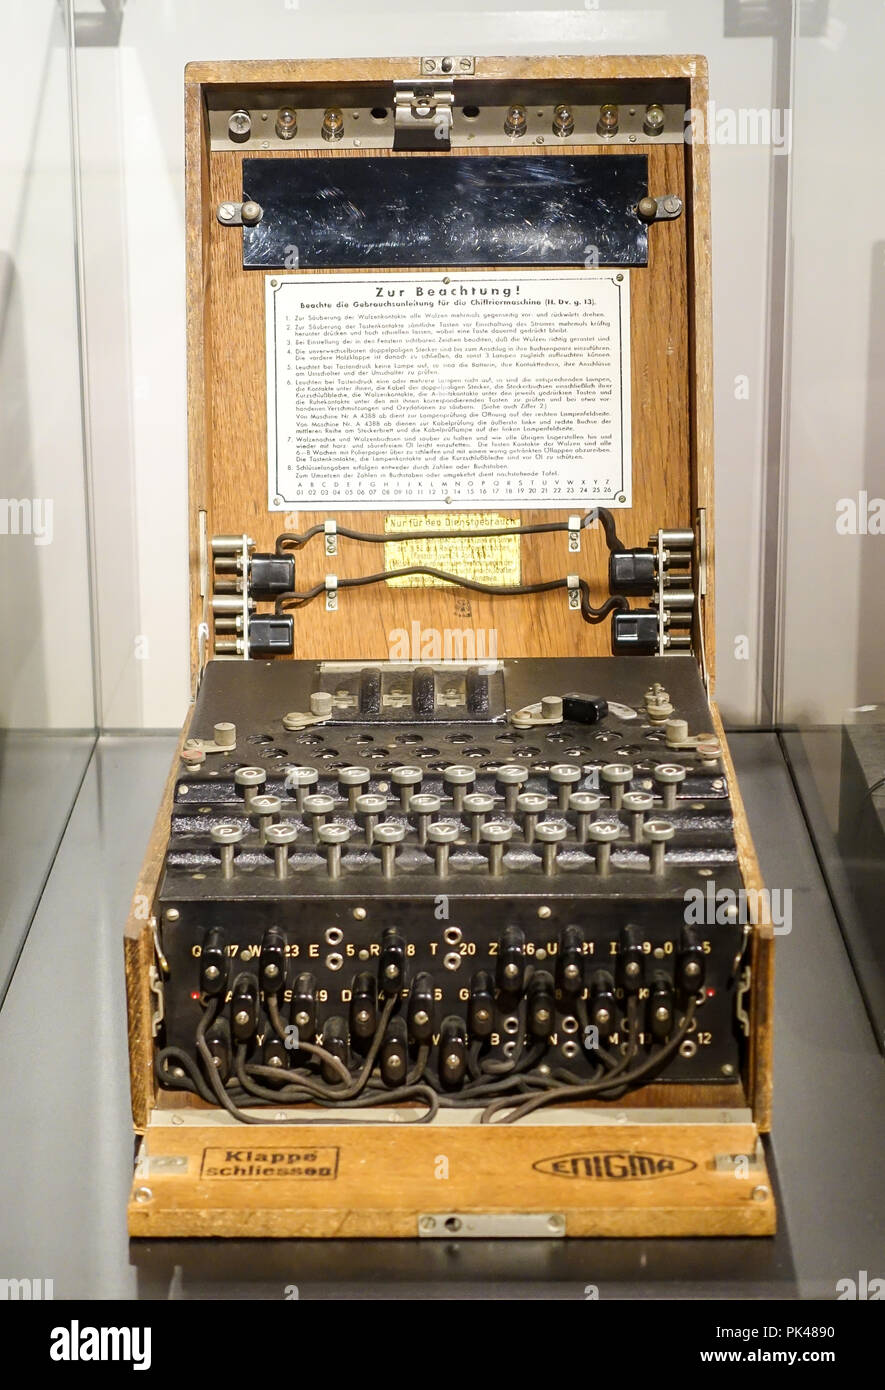 Enigma message encryption machine Stock Photo